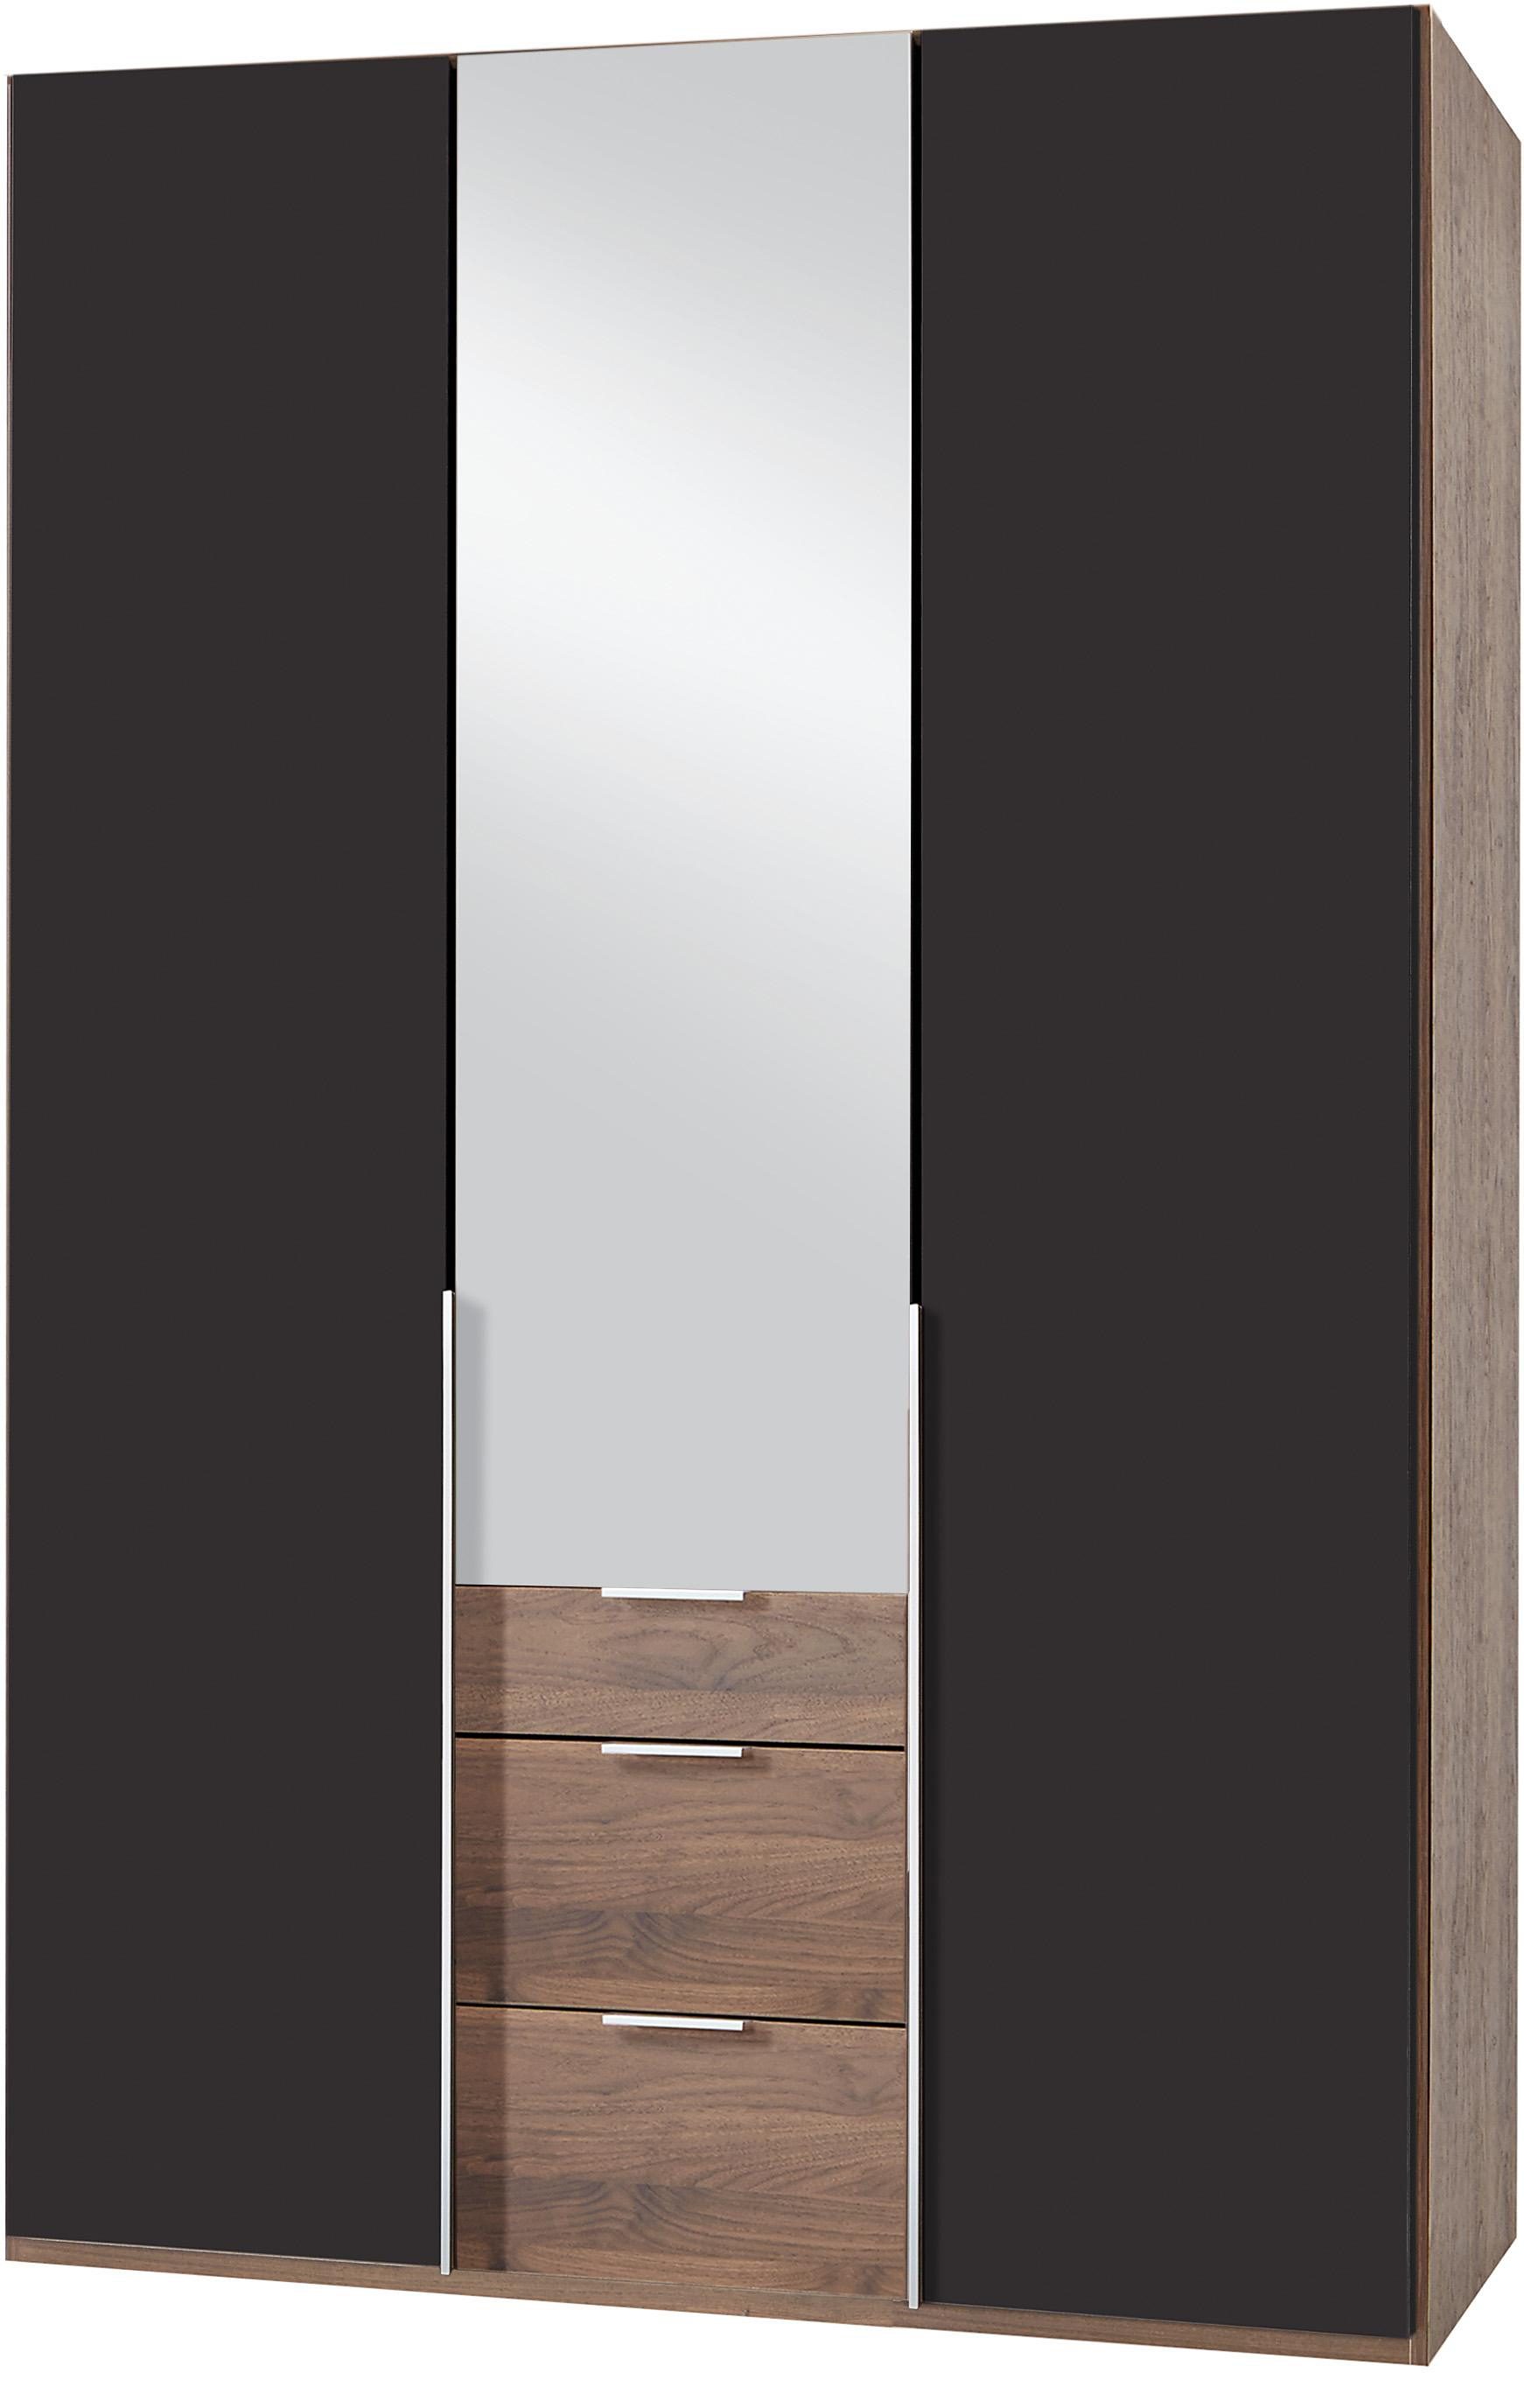 Kledingkasten Wimex garderobekast met spiegeldeuren en laden New York 337927